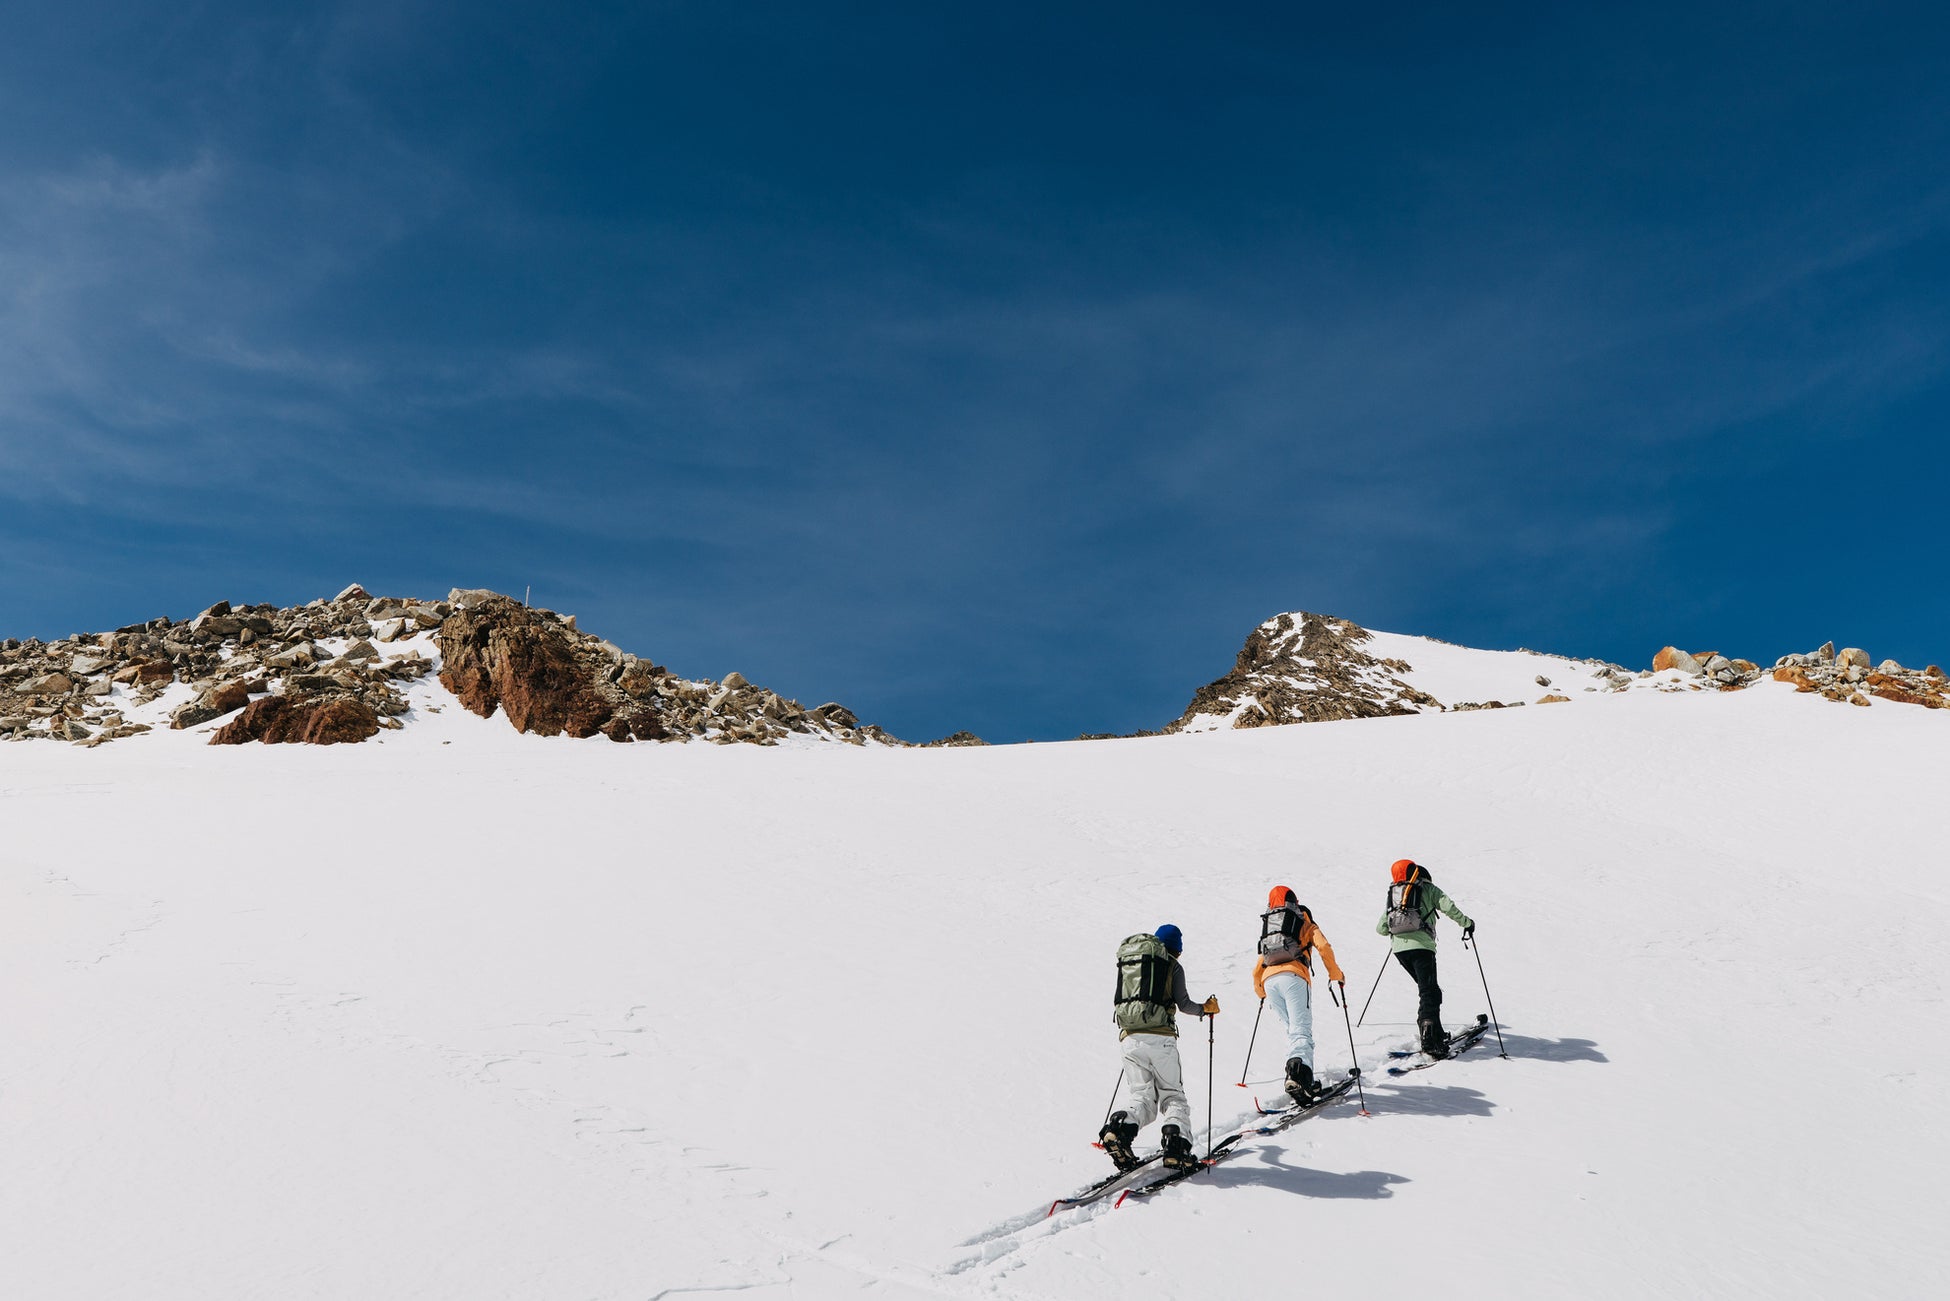 ゲレンデオープン前でも、自分で登って滑るのがスノーボーダーの“山開き”本格的な雪を待ち侘びるカルチャーに浸る、晩秋仕様の機能的コレクション Burton Fall Split Collection のサブ画像2